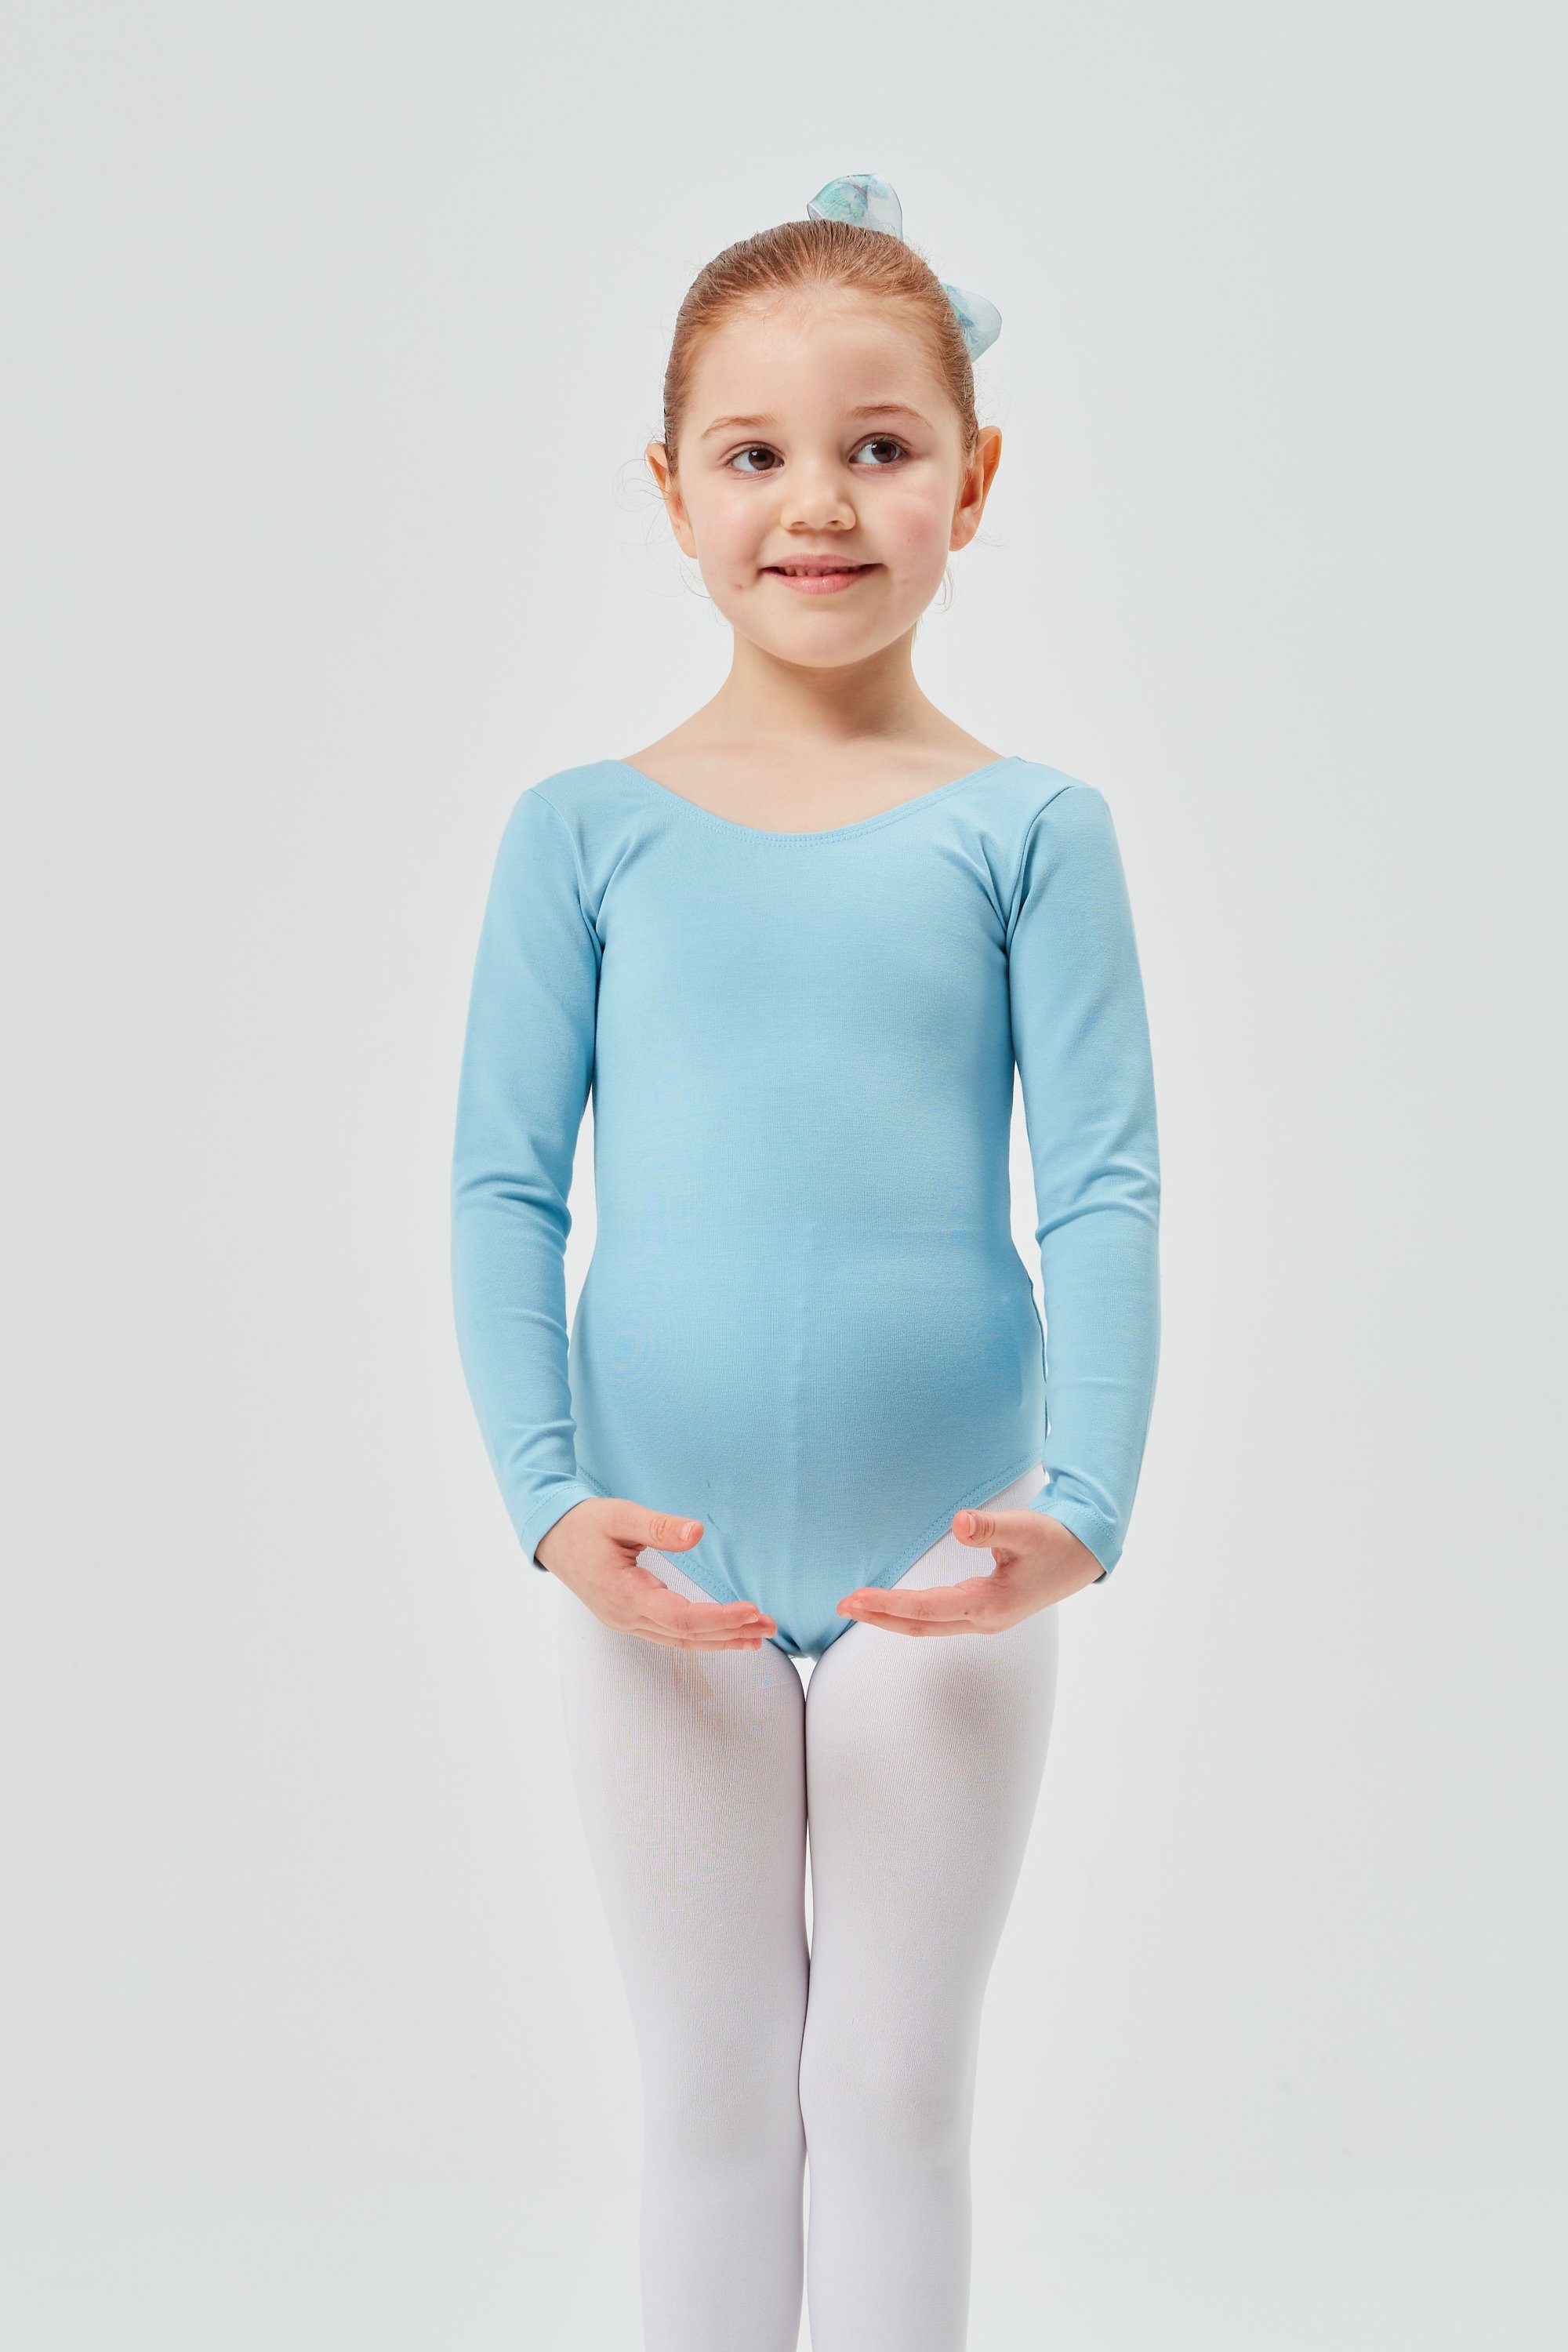 tanzmuster weichem Kinder Ballettbody fürs Ballett hellblau aus Lilly Body Baumwollmischgewebe Trikot Langarm